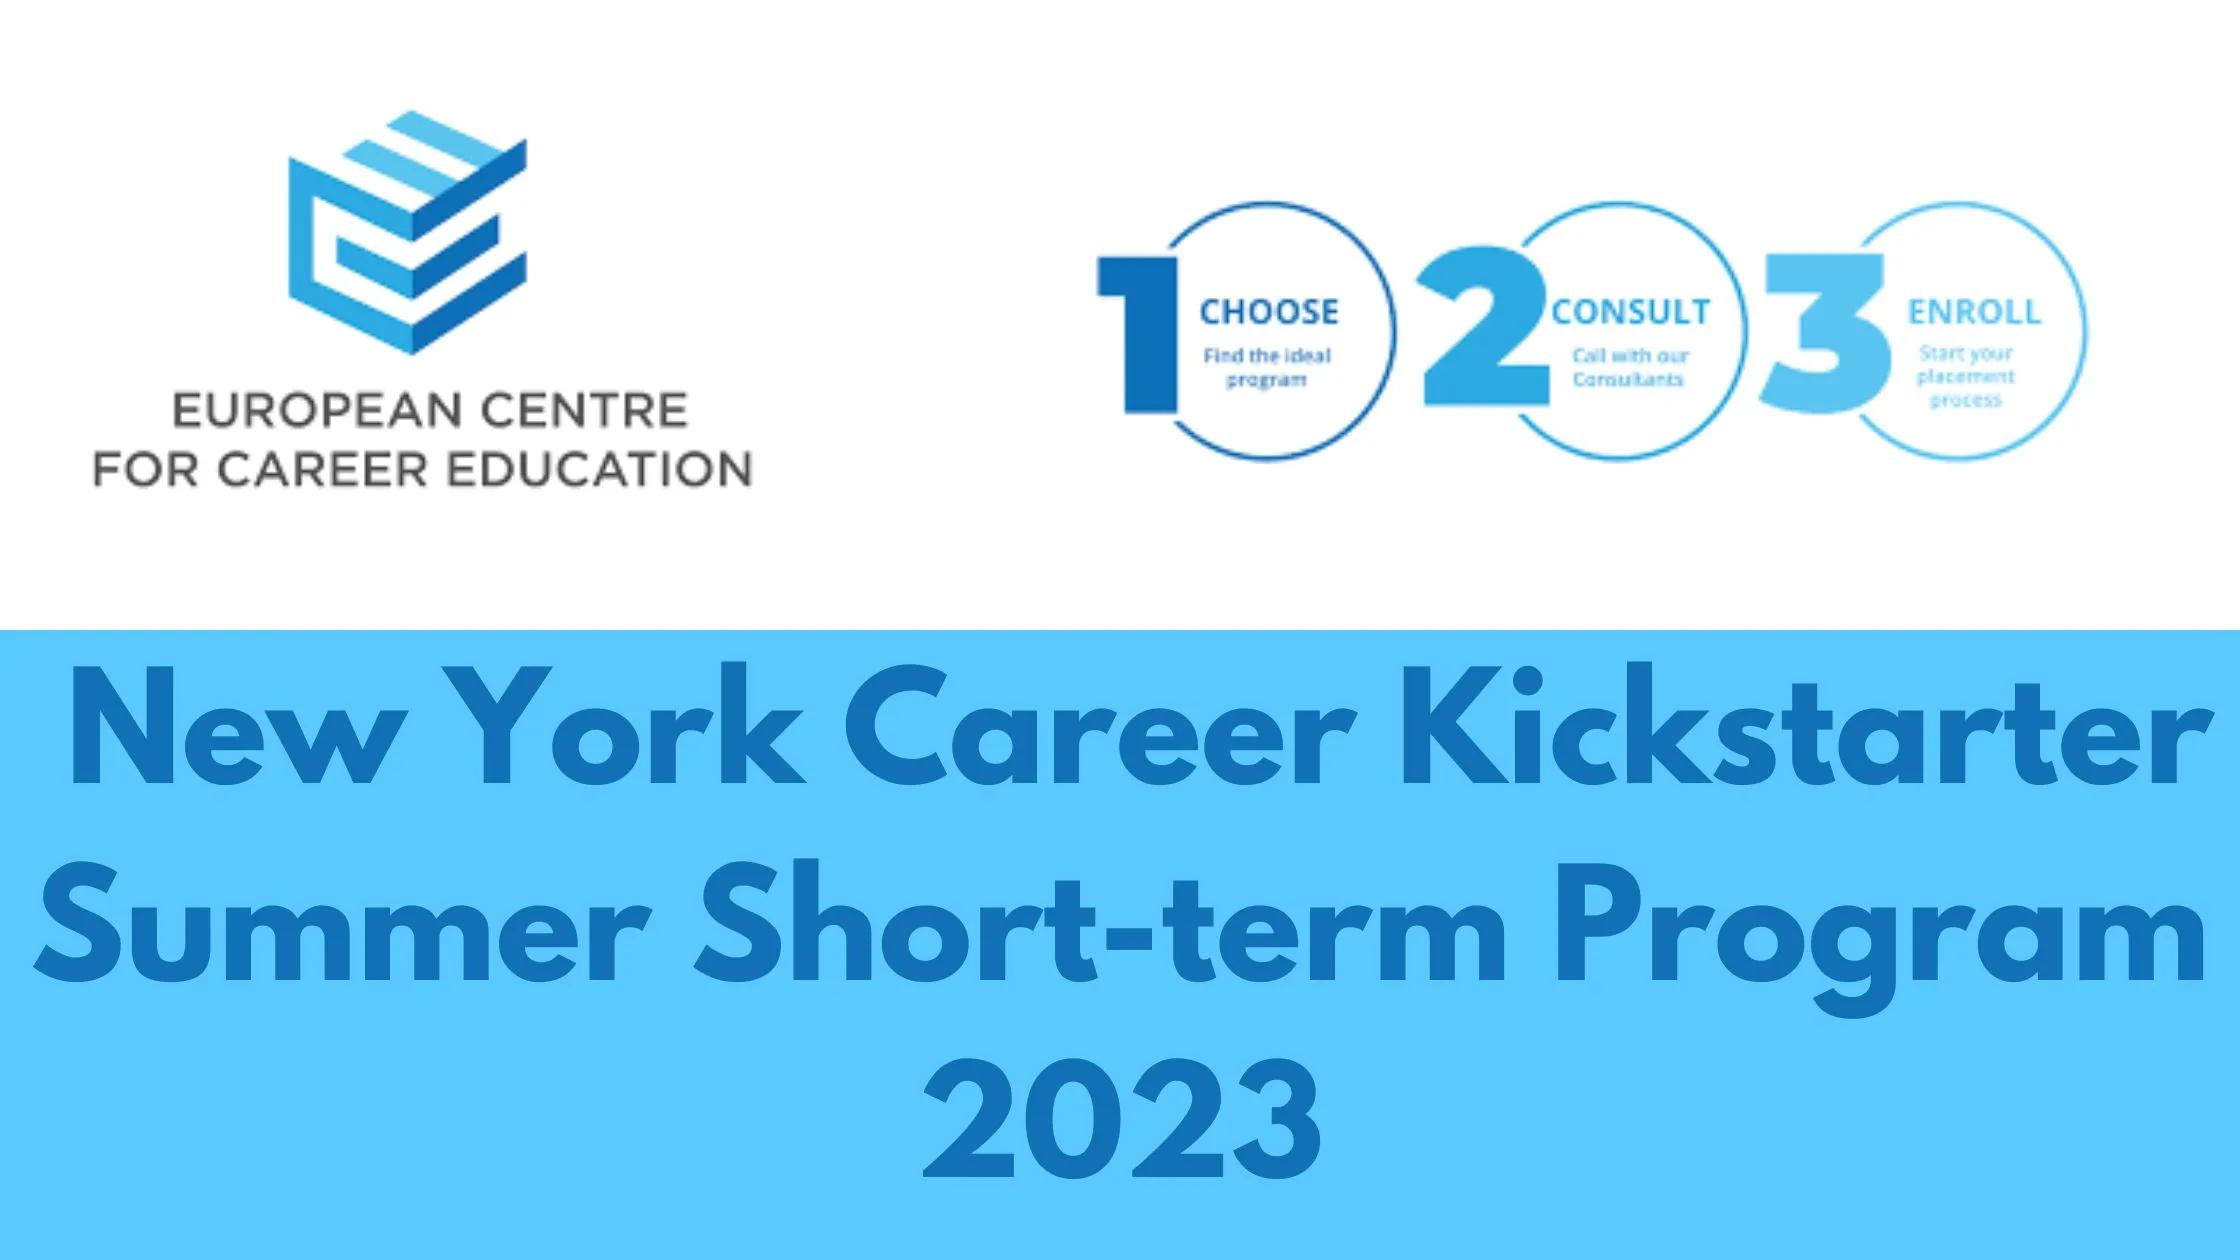 European Center For Career Education/New York Career Kickstarter Summer Short-term Program 2023